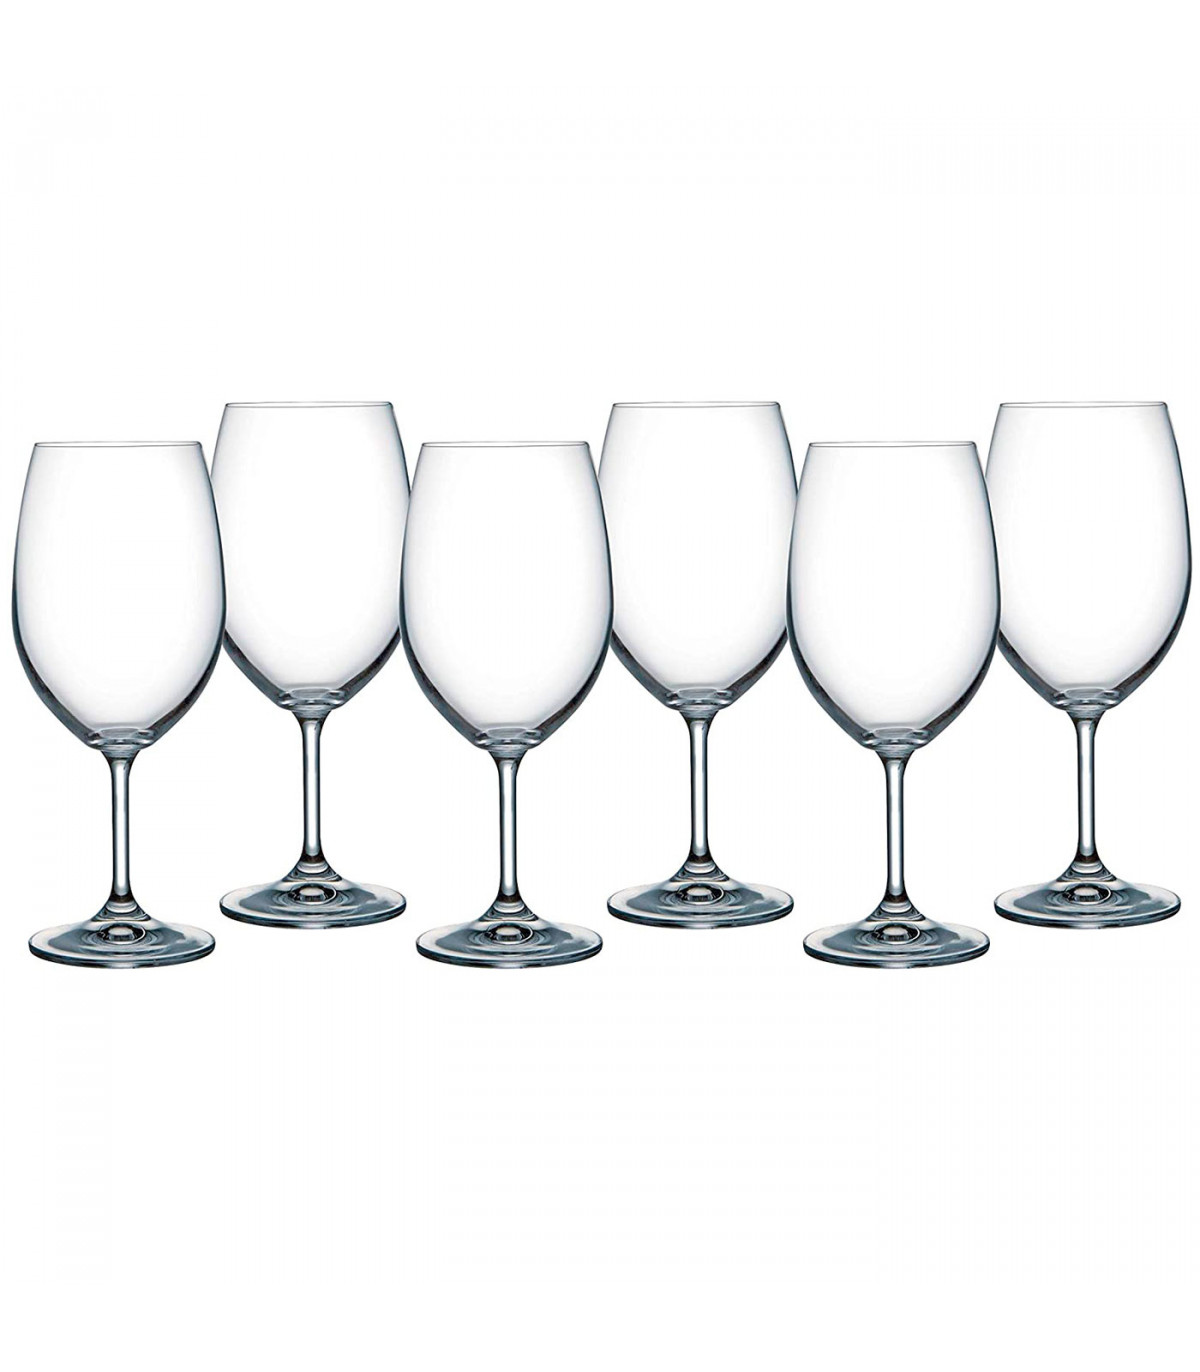 Pack 6 copas de vino 59 cl, cristal liso, modelo degustation, diseño  circular sofisticado y elegante, 21,3 x 6,8 cm, aptas para